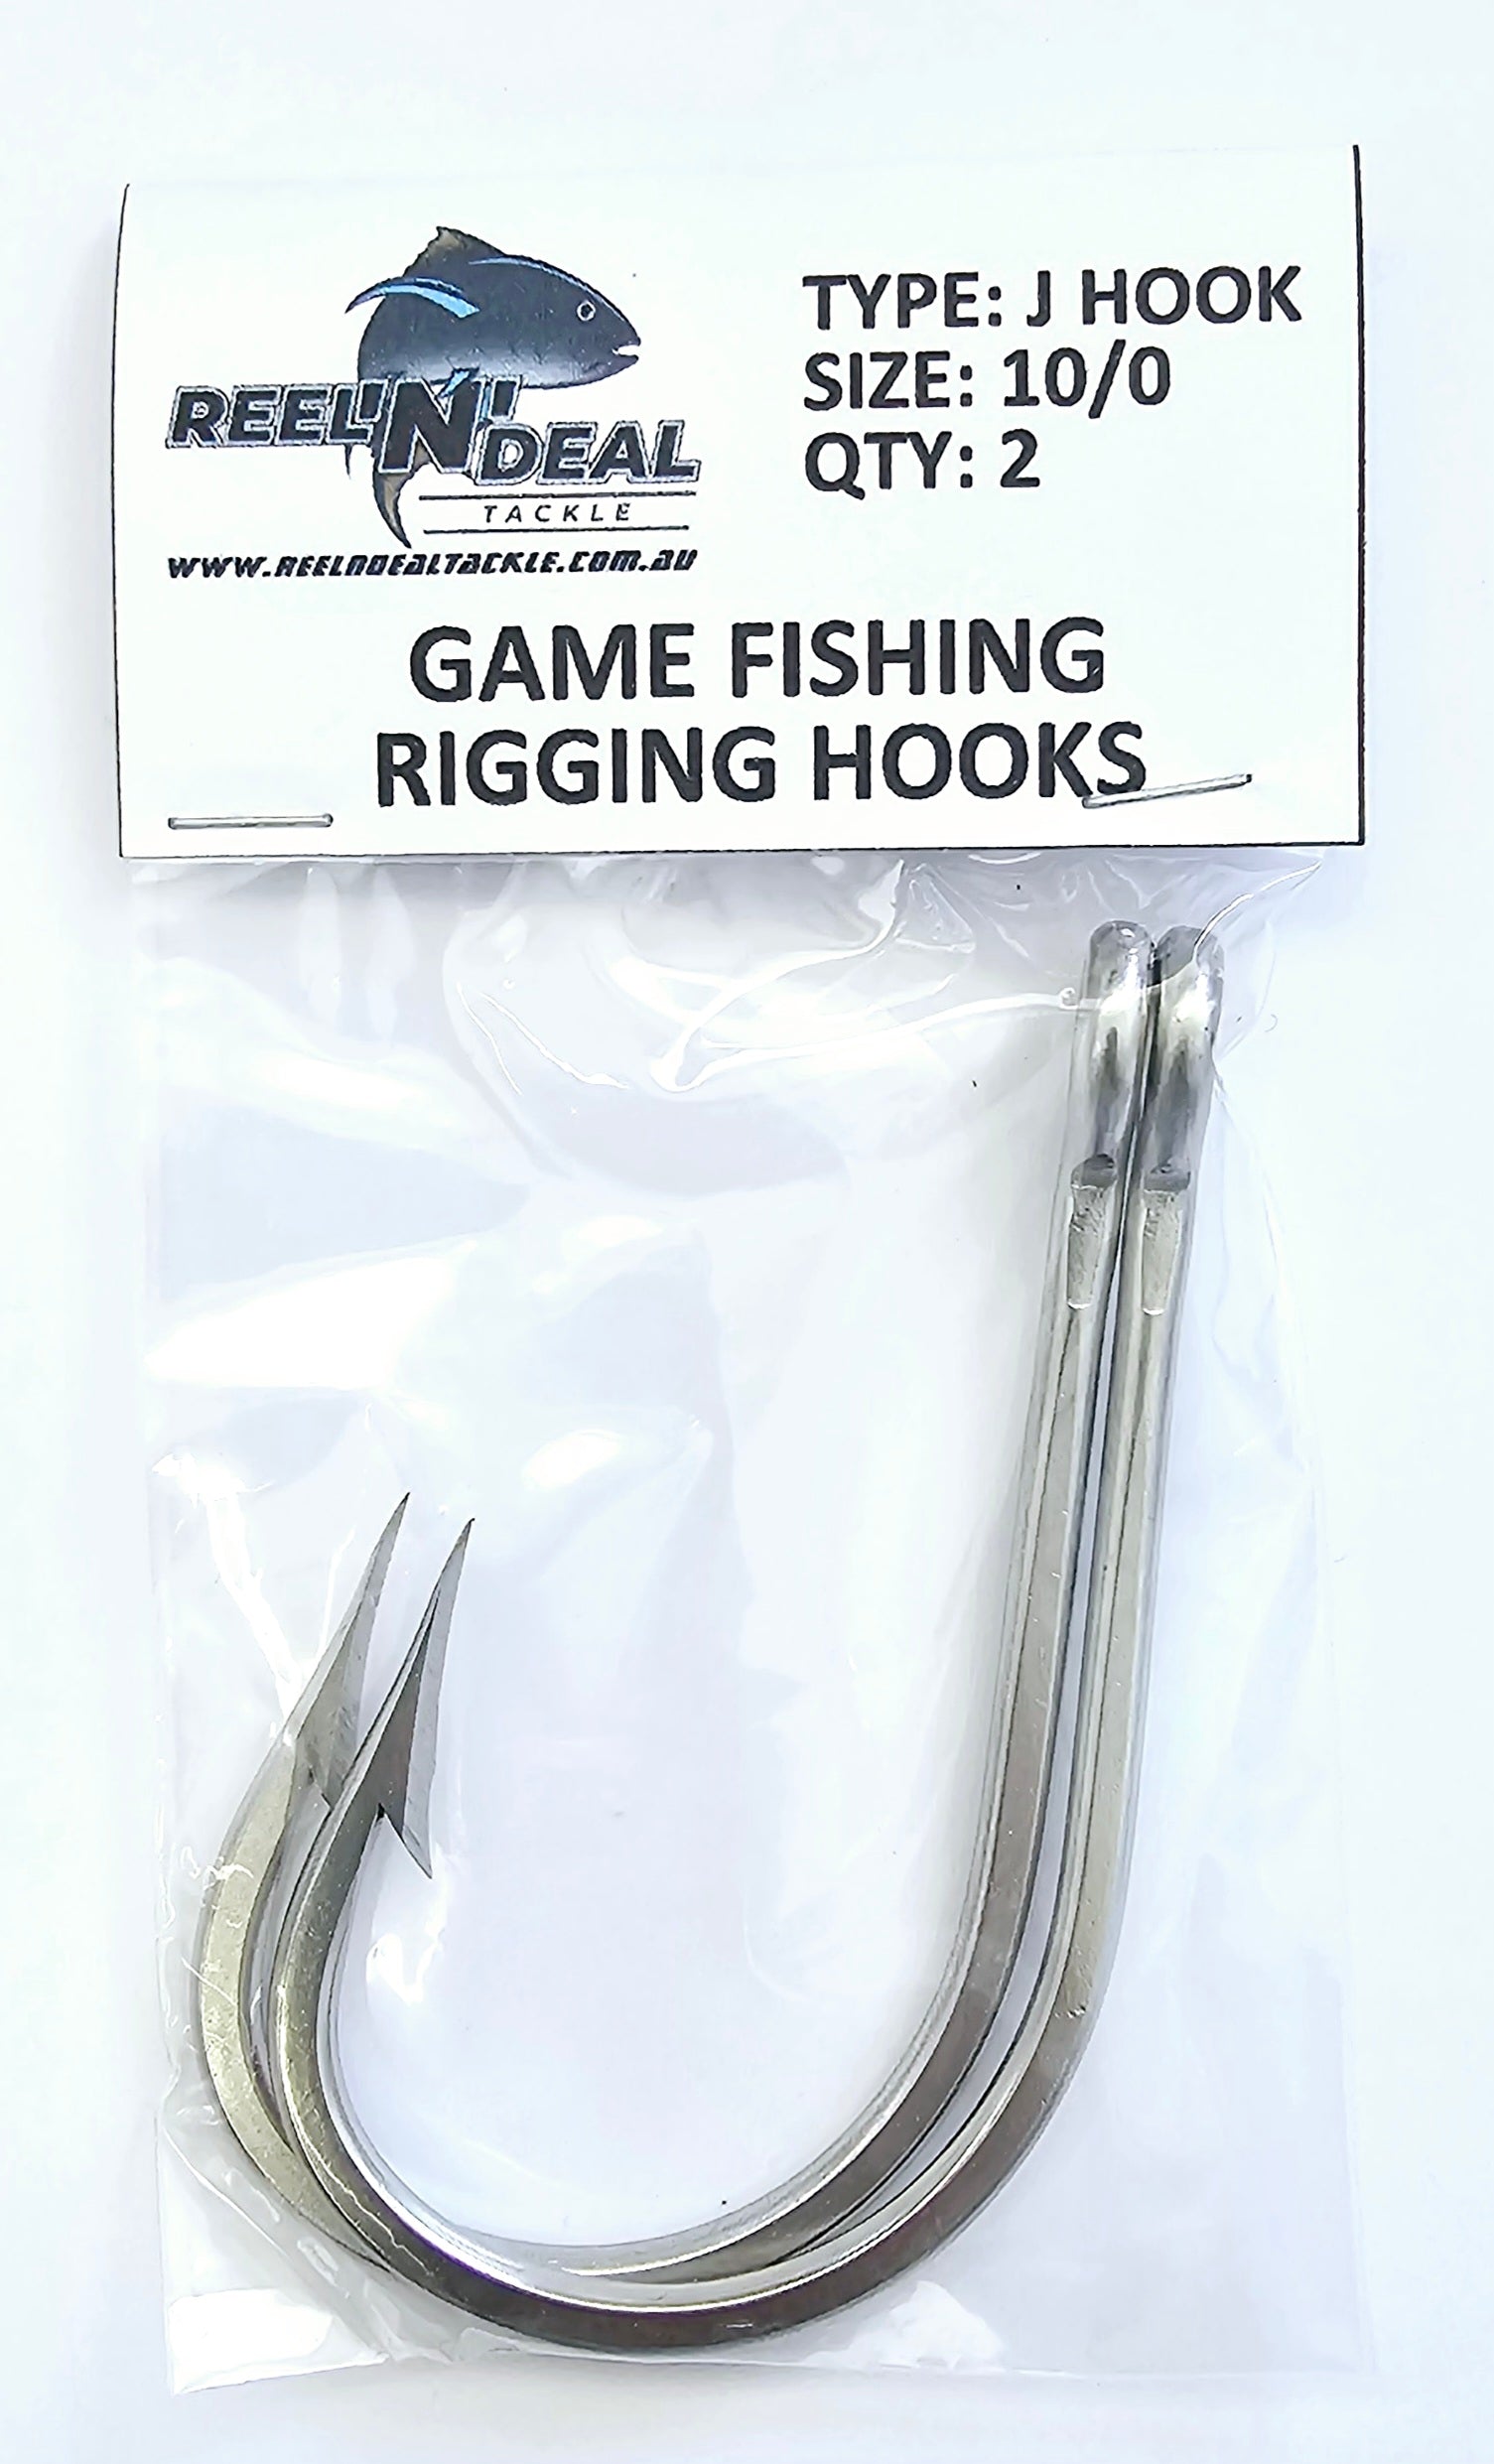 Stainless Steel Rigging J Hooks 10/0 2 Pack – REEL 'N' DEAL TACKLE